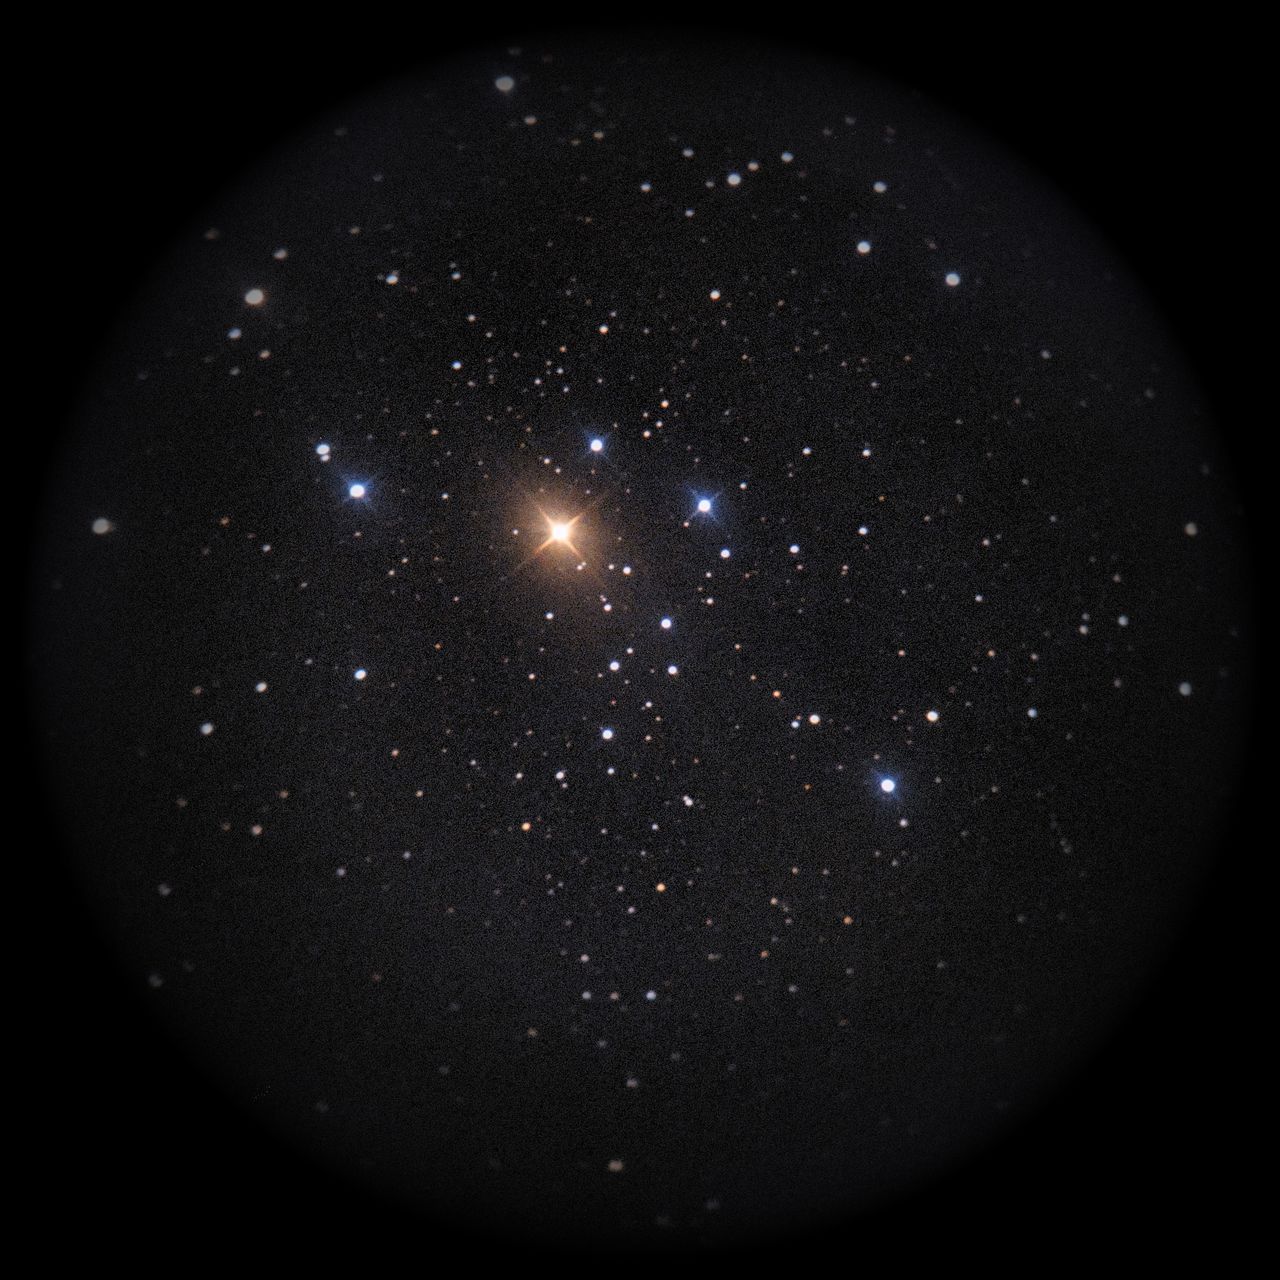 Image of NGC2451